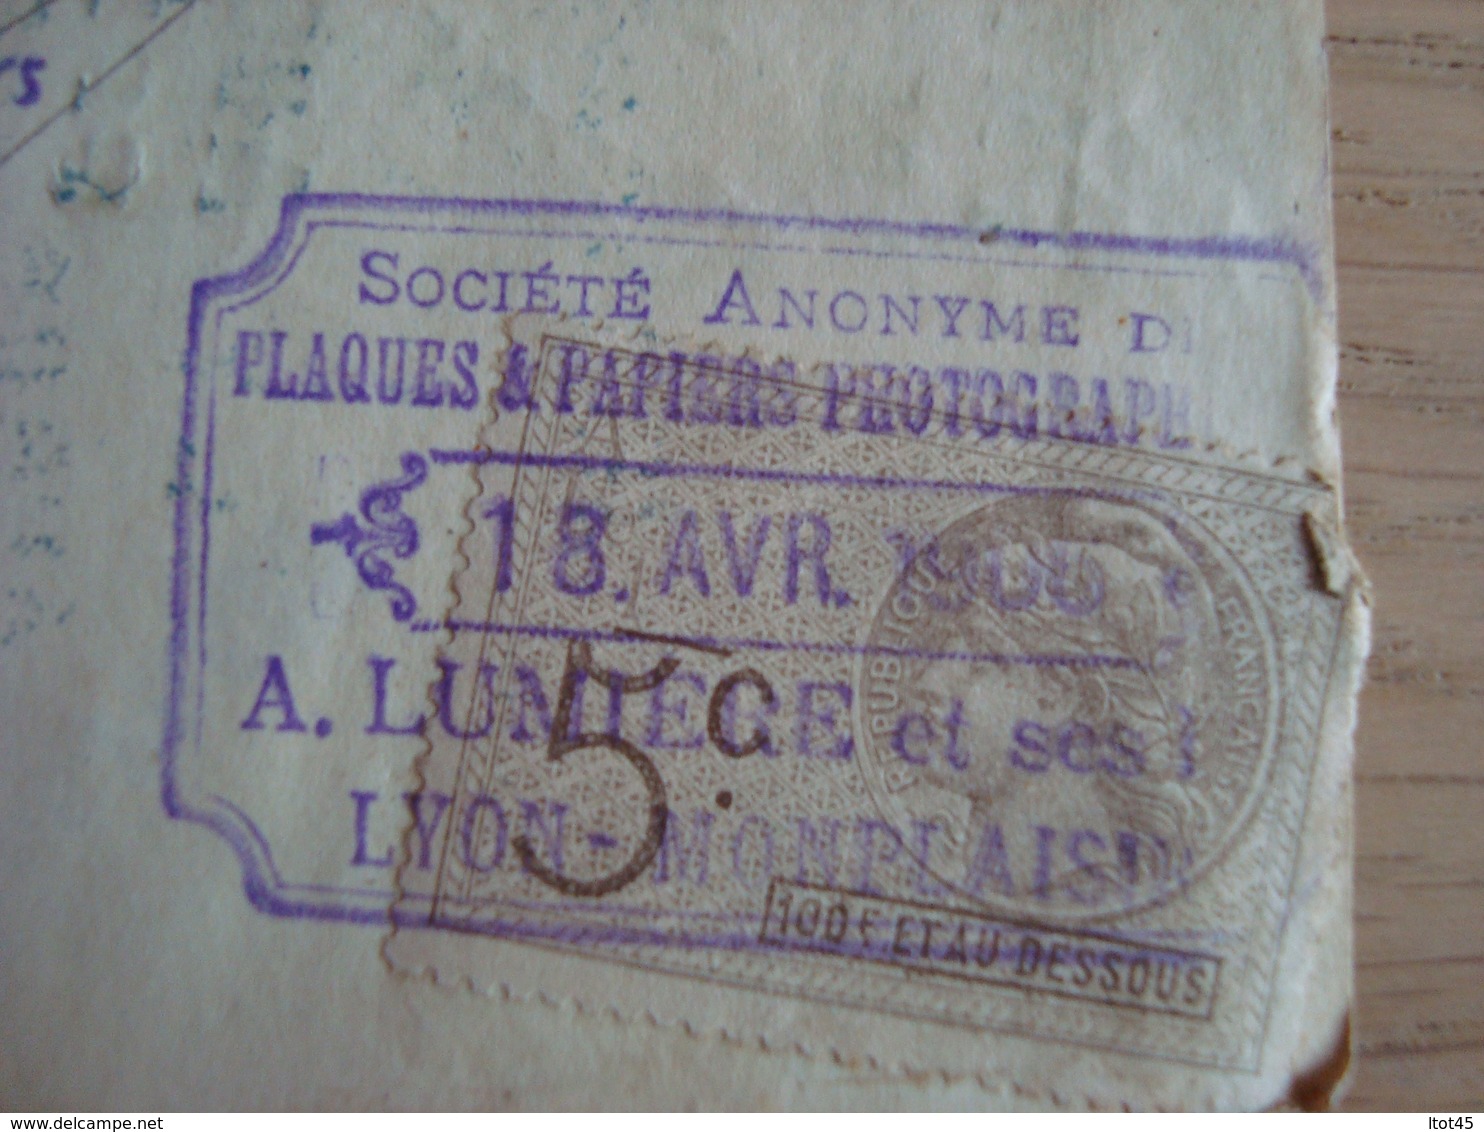 LETTRE DE CHANGE A. LUMIERE 1 SES FILS PLAQUES 1 PAPIERS PHOTOGRAPHIQUES 1906 - Bills Of Exchange